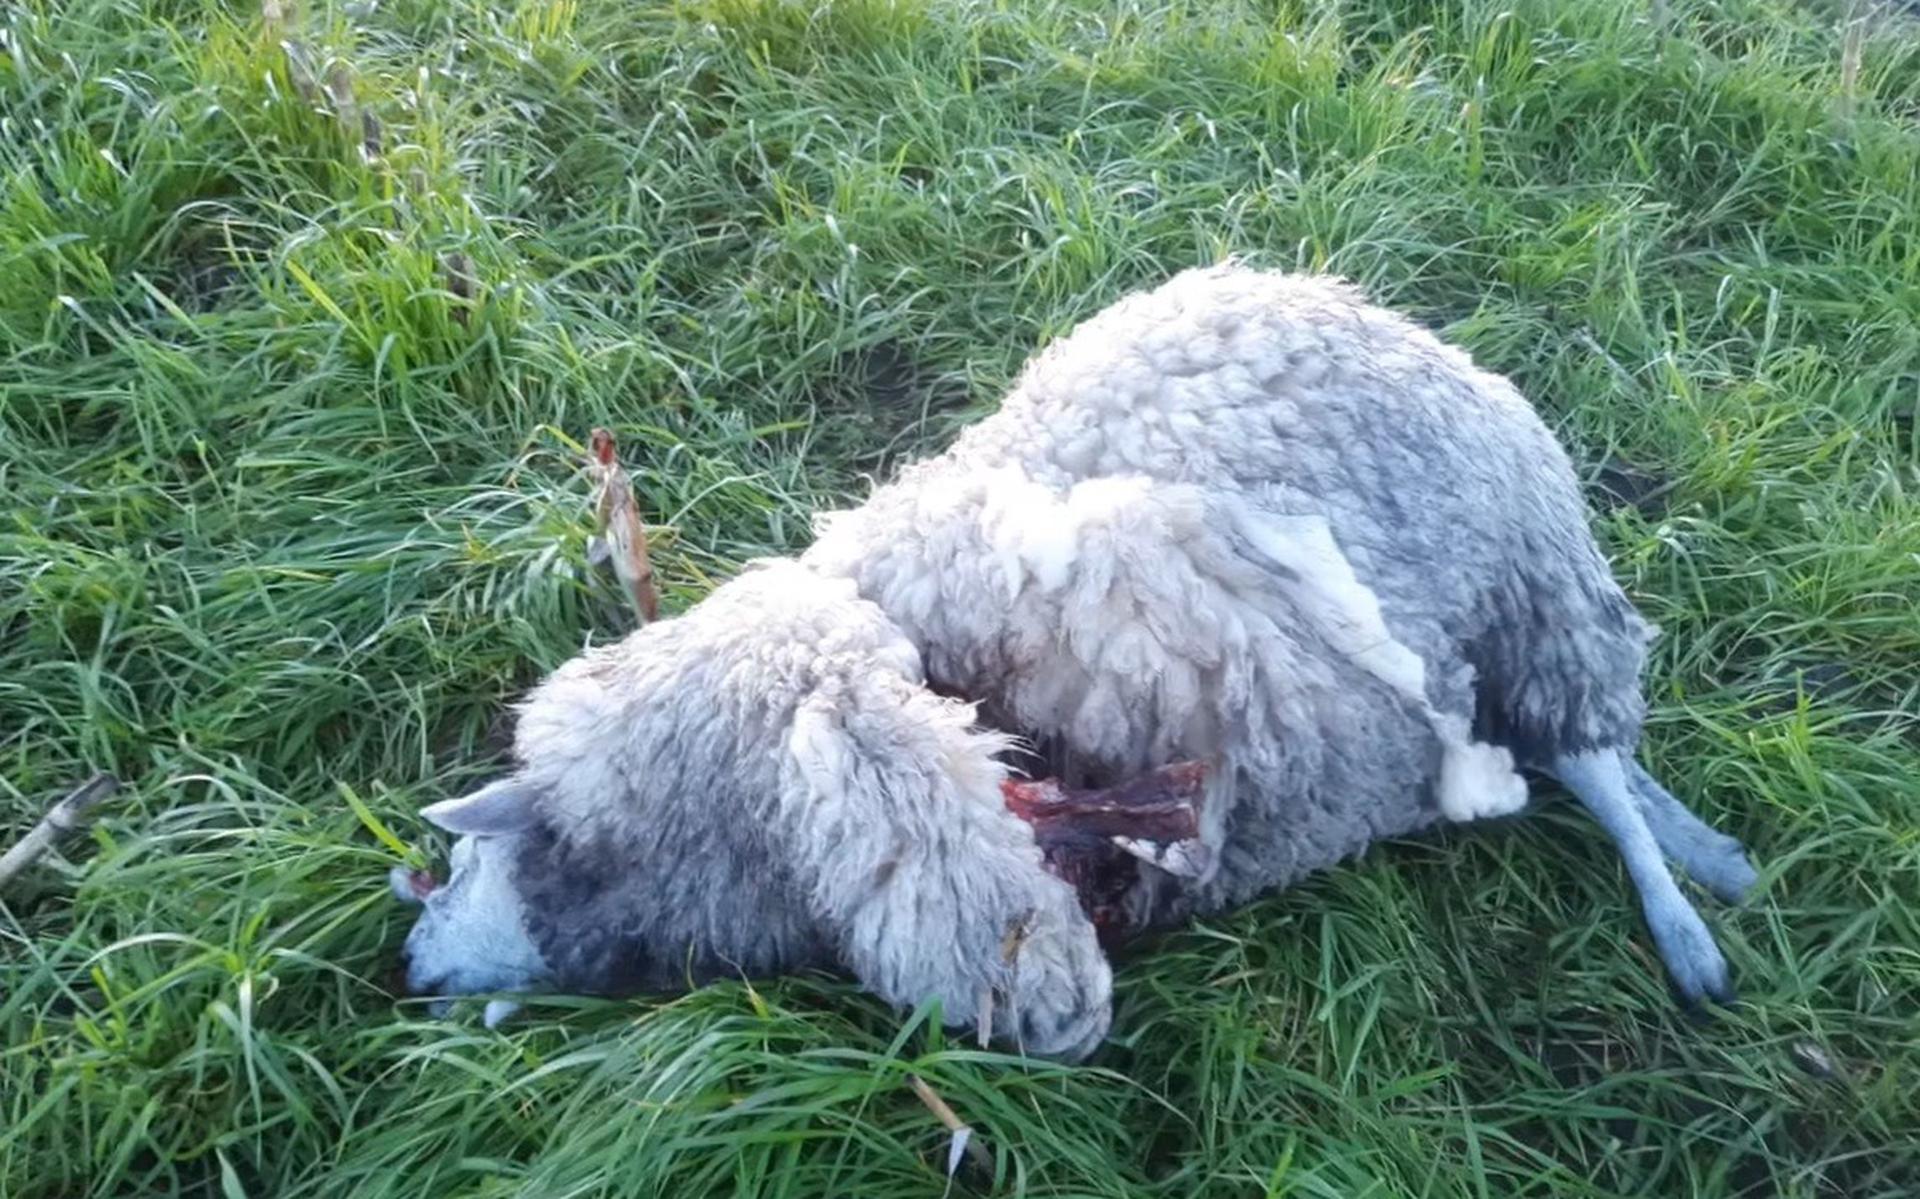 Drie schapen lagen levenloos en met verwondingen in het veld.